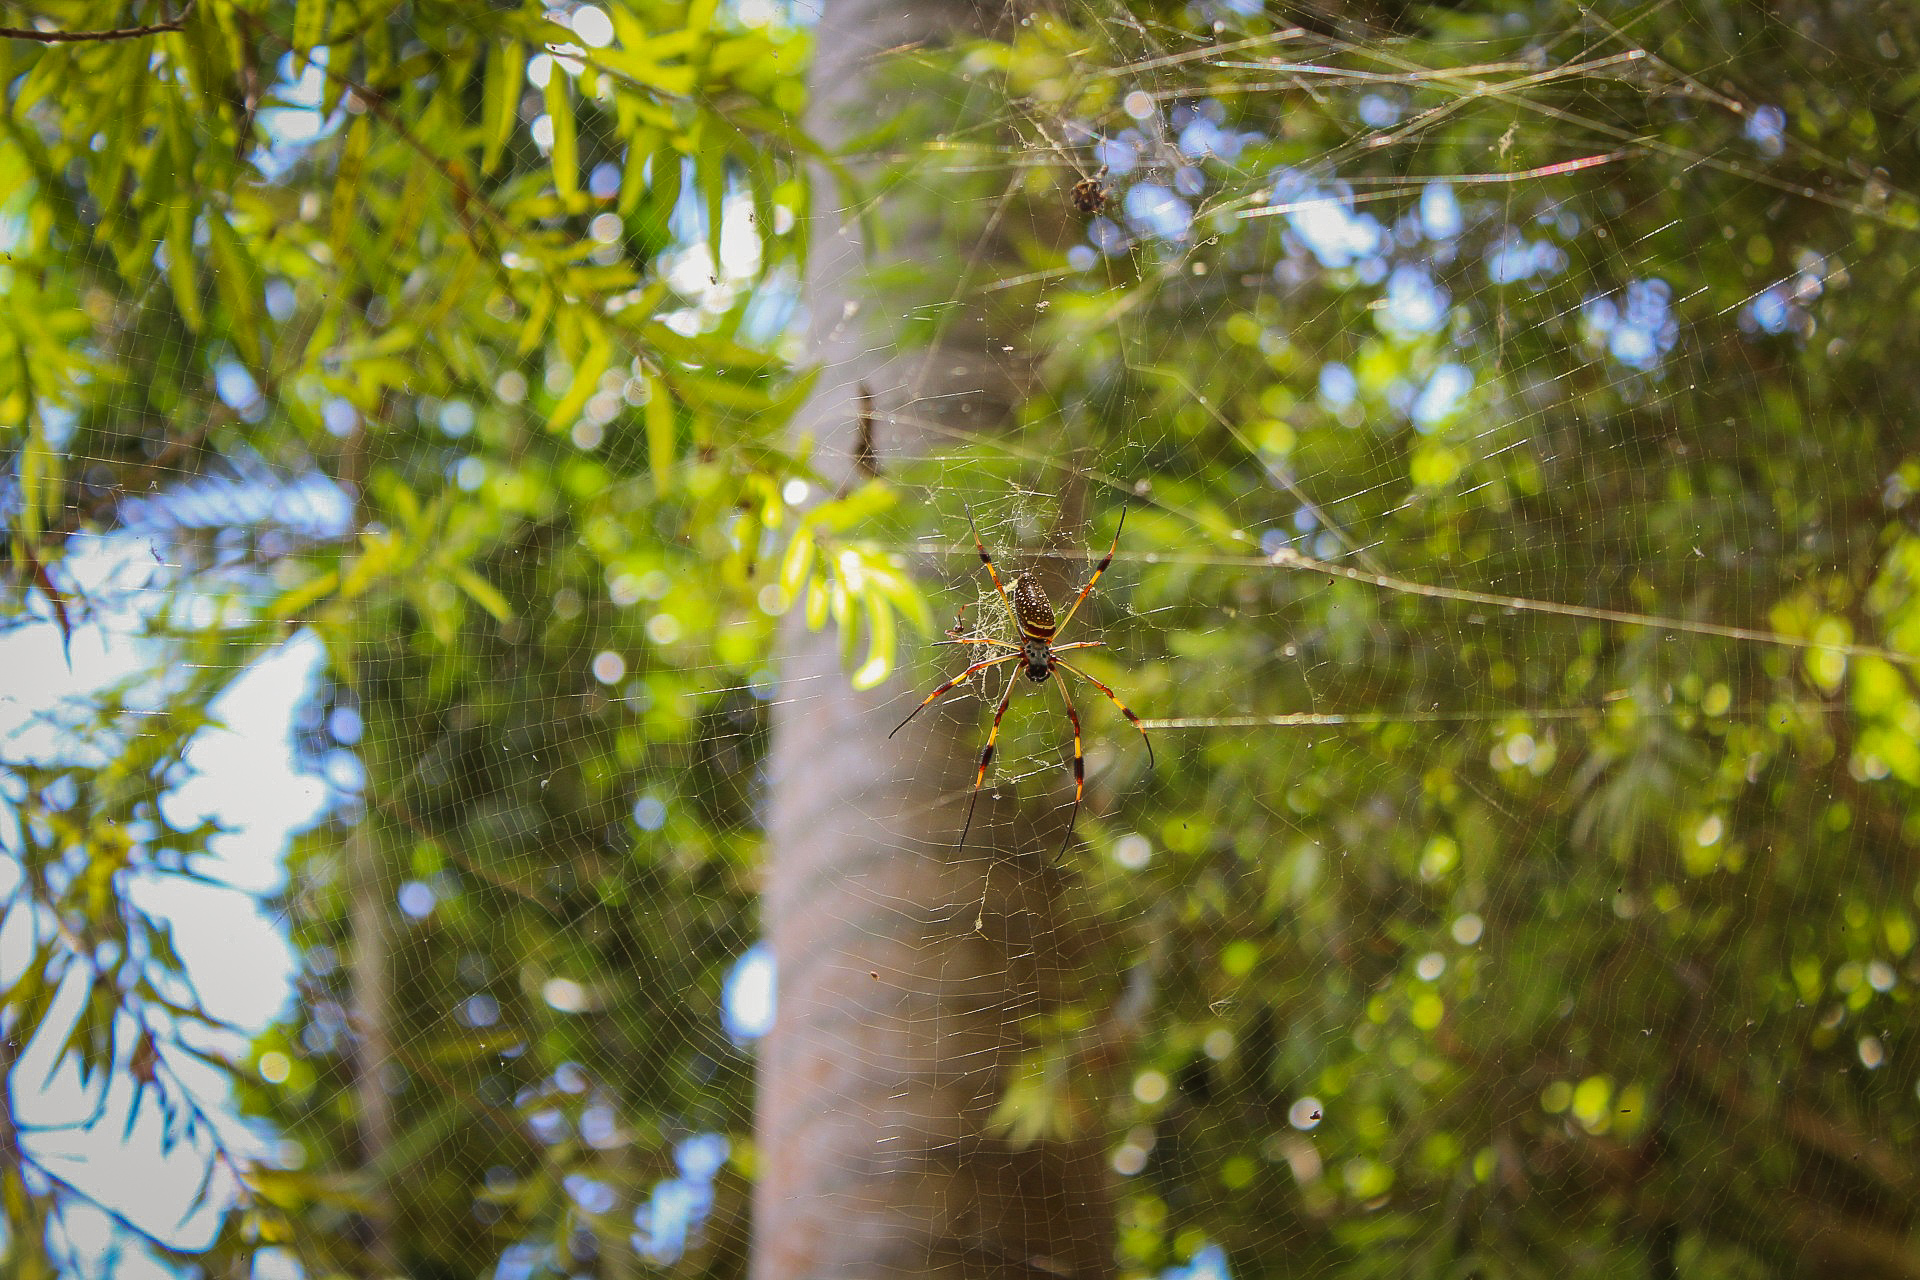 Banana spider at Shaw Park Gardens